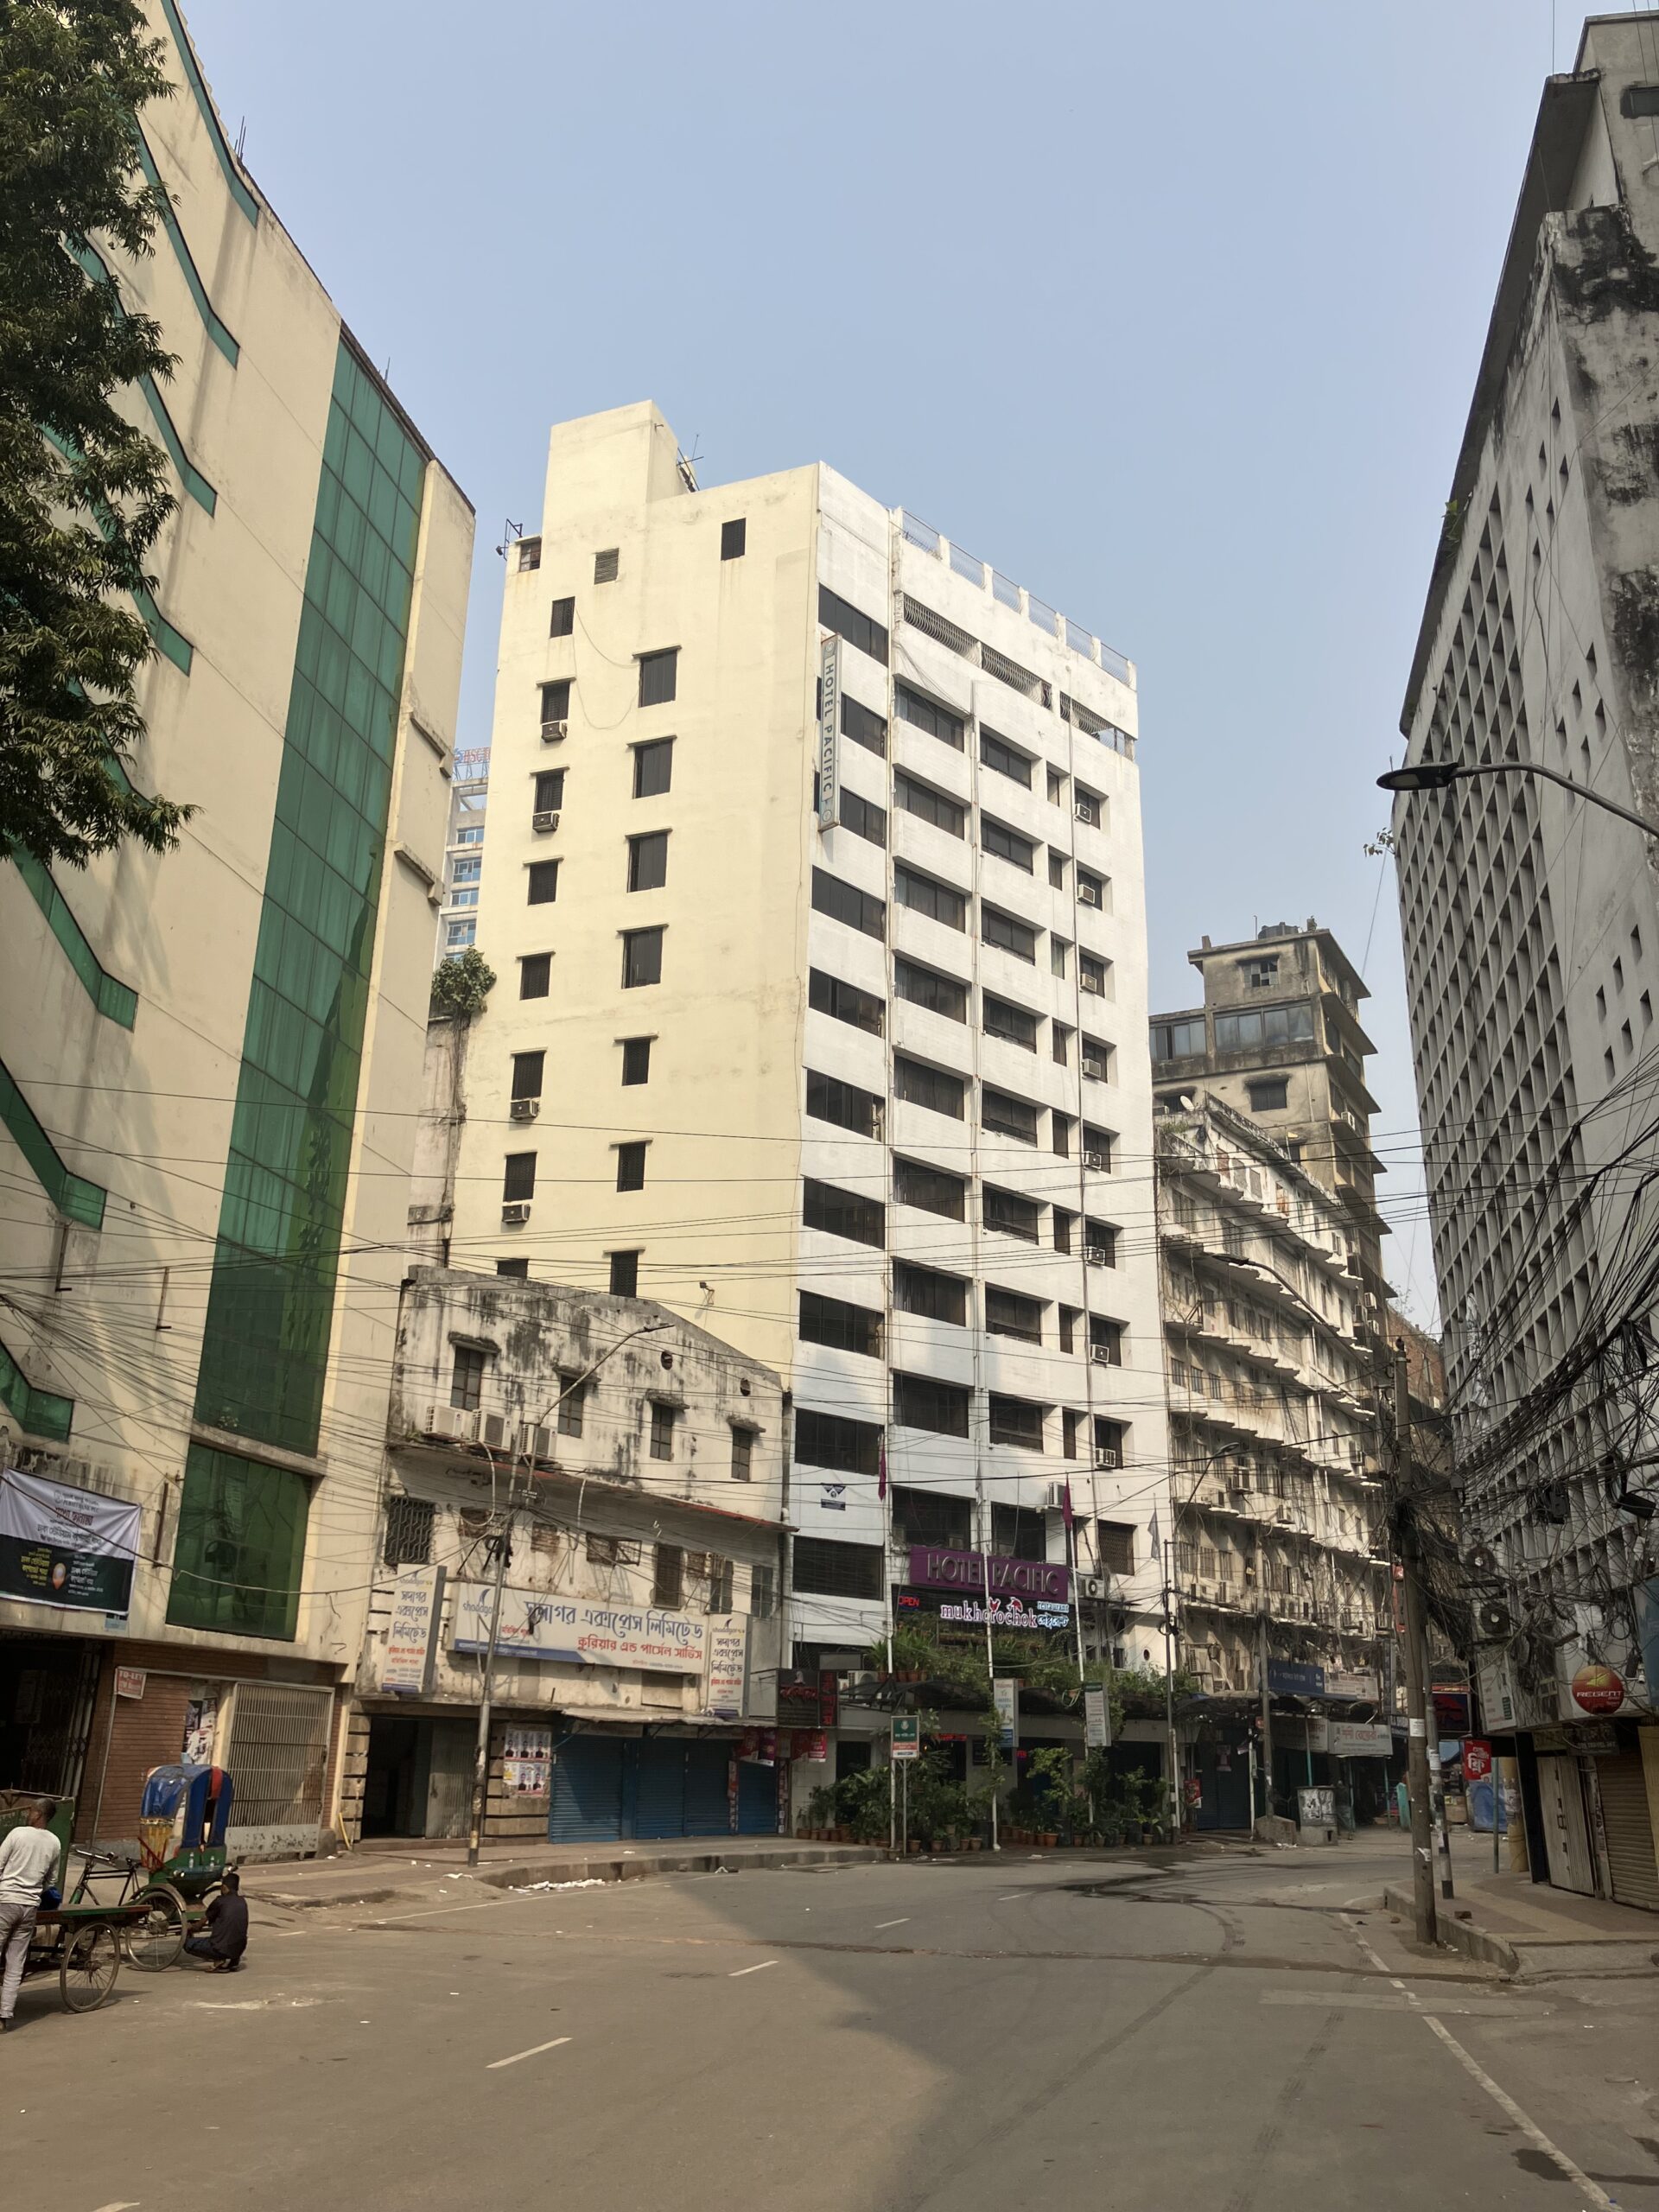 ダッカ(Dhaka)の宿ホテルパシフィック(Hotel Pacific)